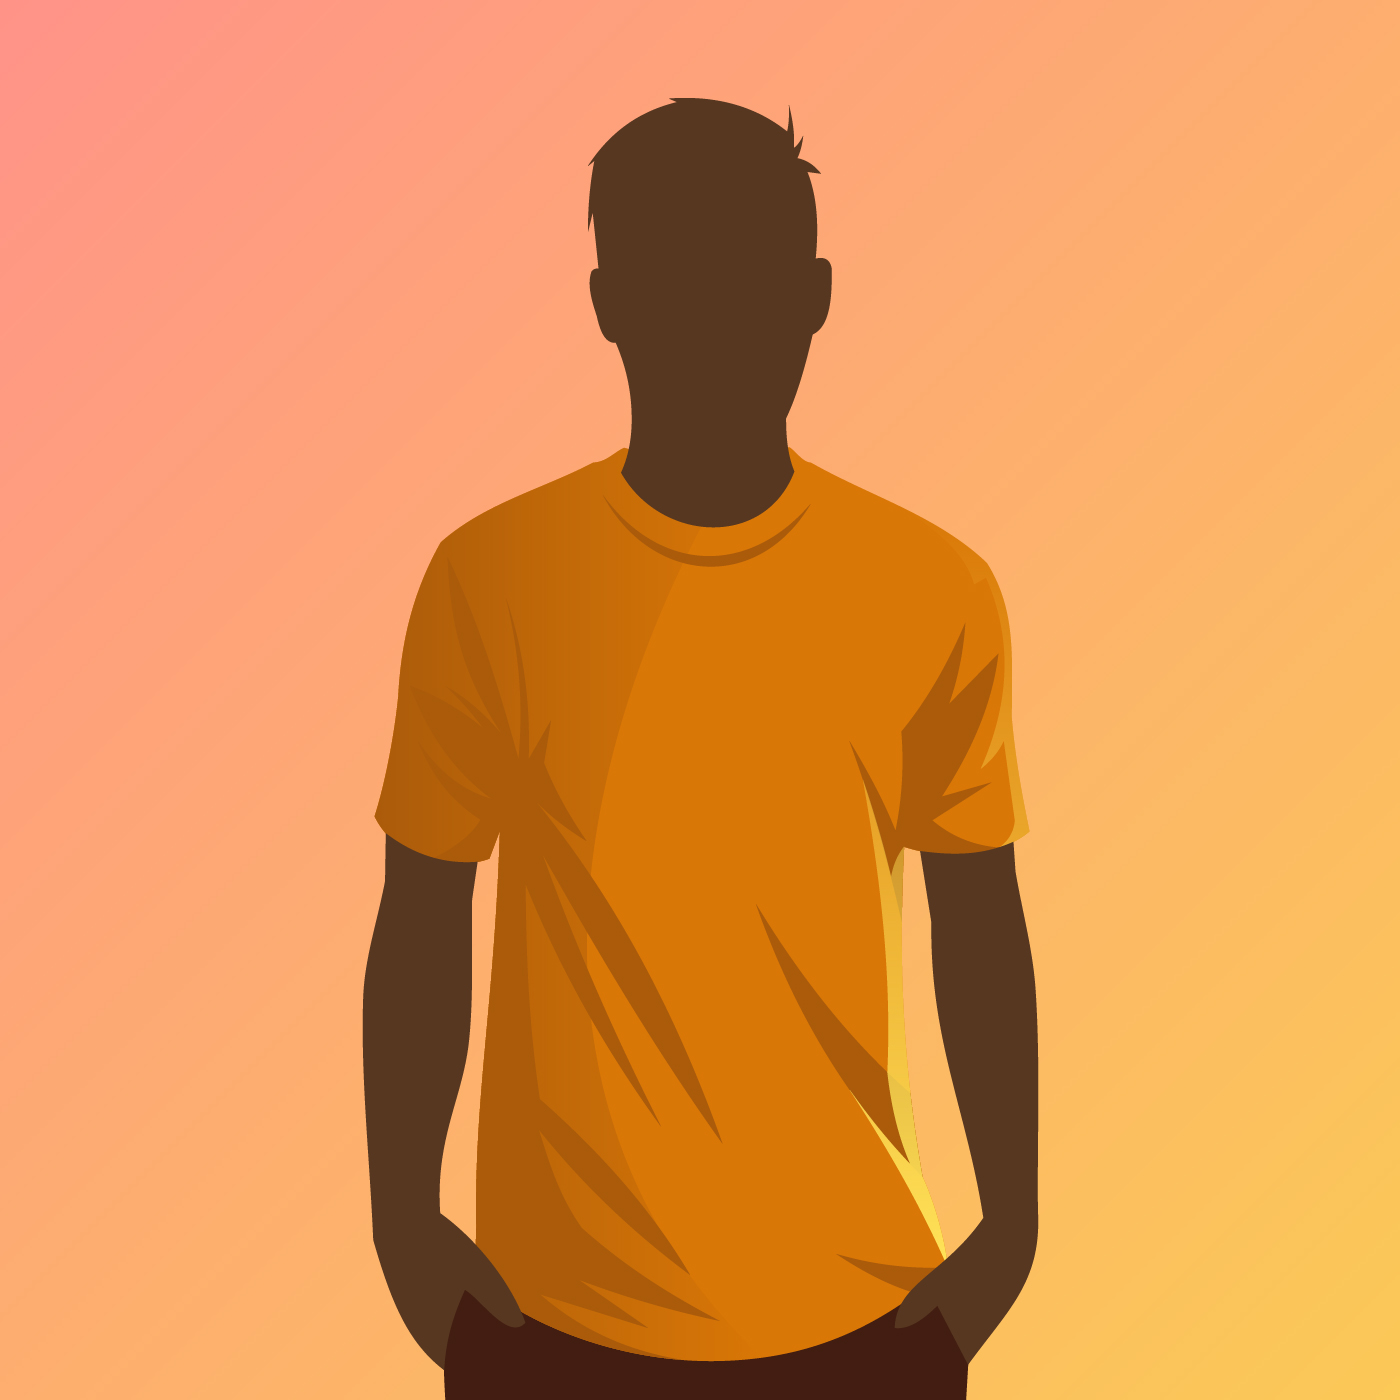 Download Orange T Shirt Model Vector - Download Free Vectors ...